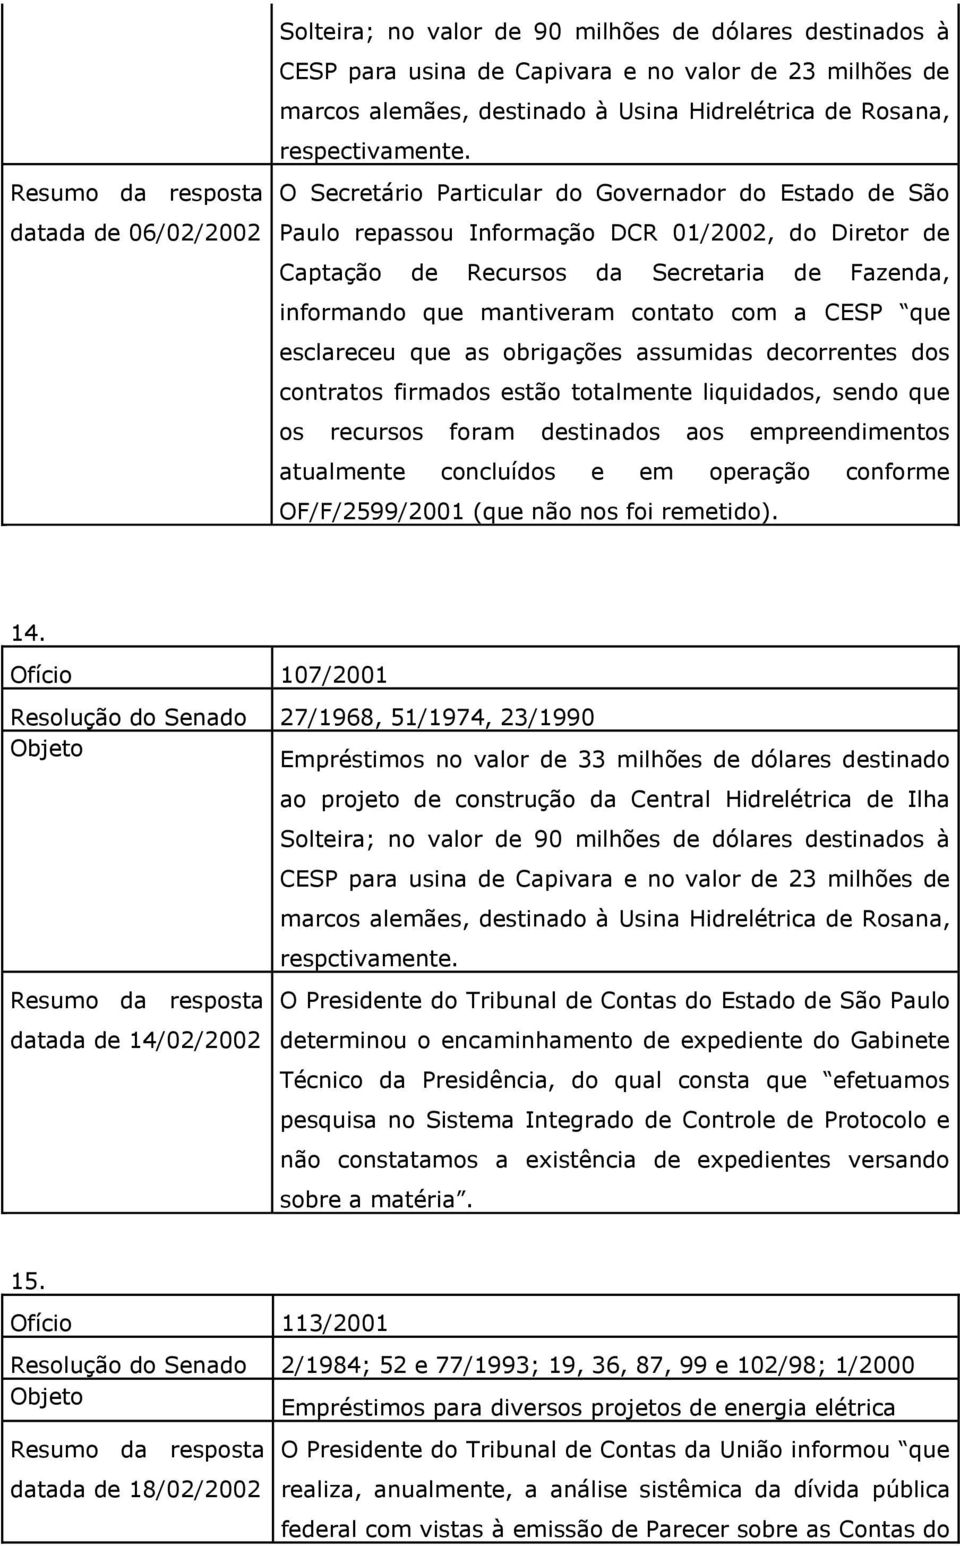 O Secretário Particular do Governador do Estado de São Paulo repassou Informação DCR 01/2002, do Diretor de Captação de Recursos da Secretaria de Fazenda, informando que mantiveram contato com a CESP